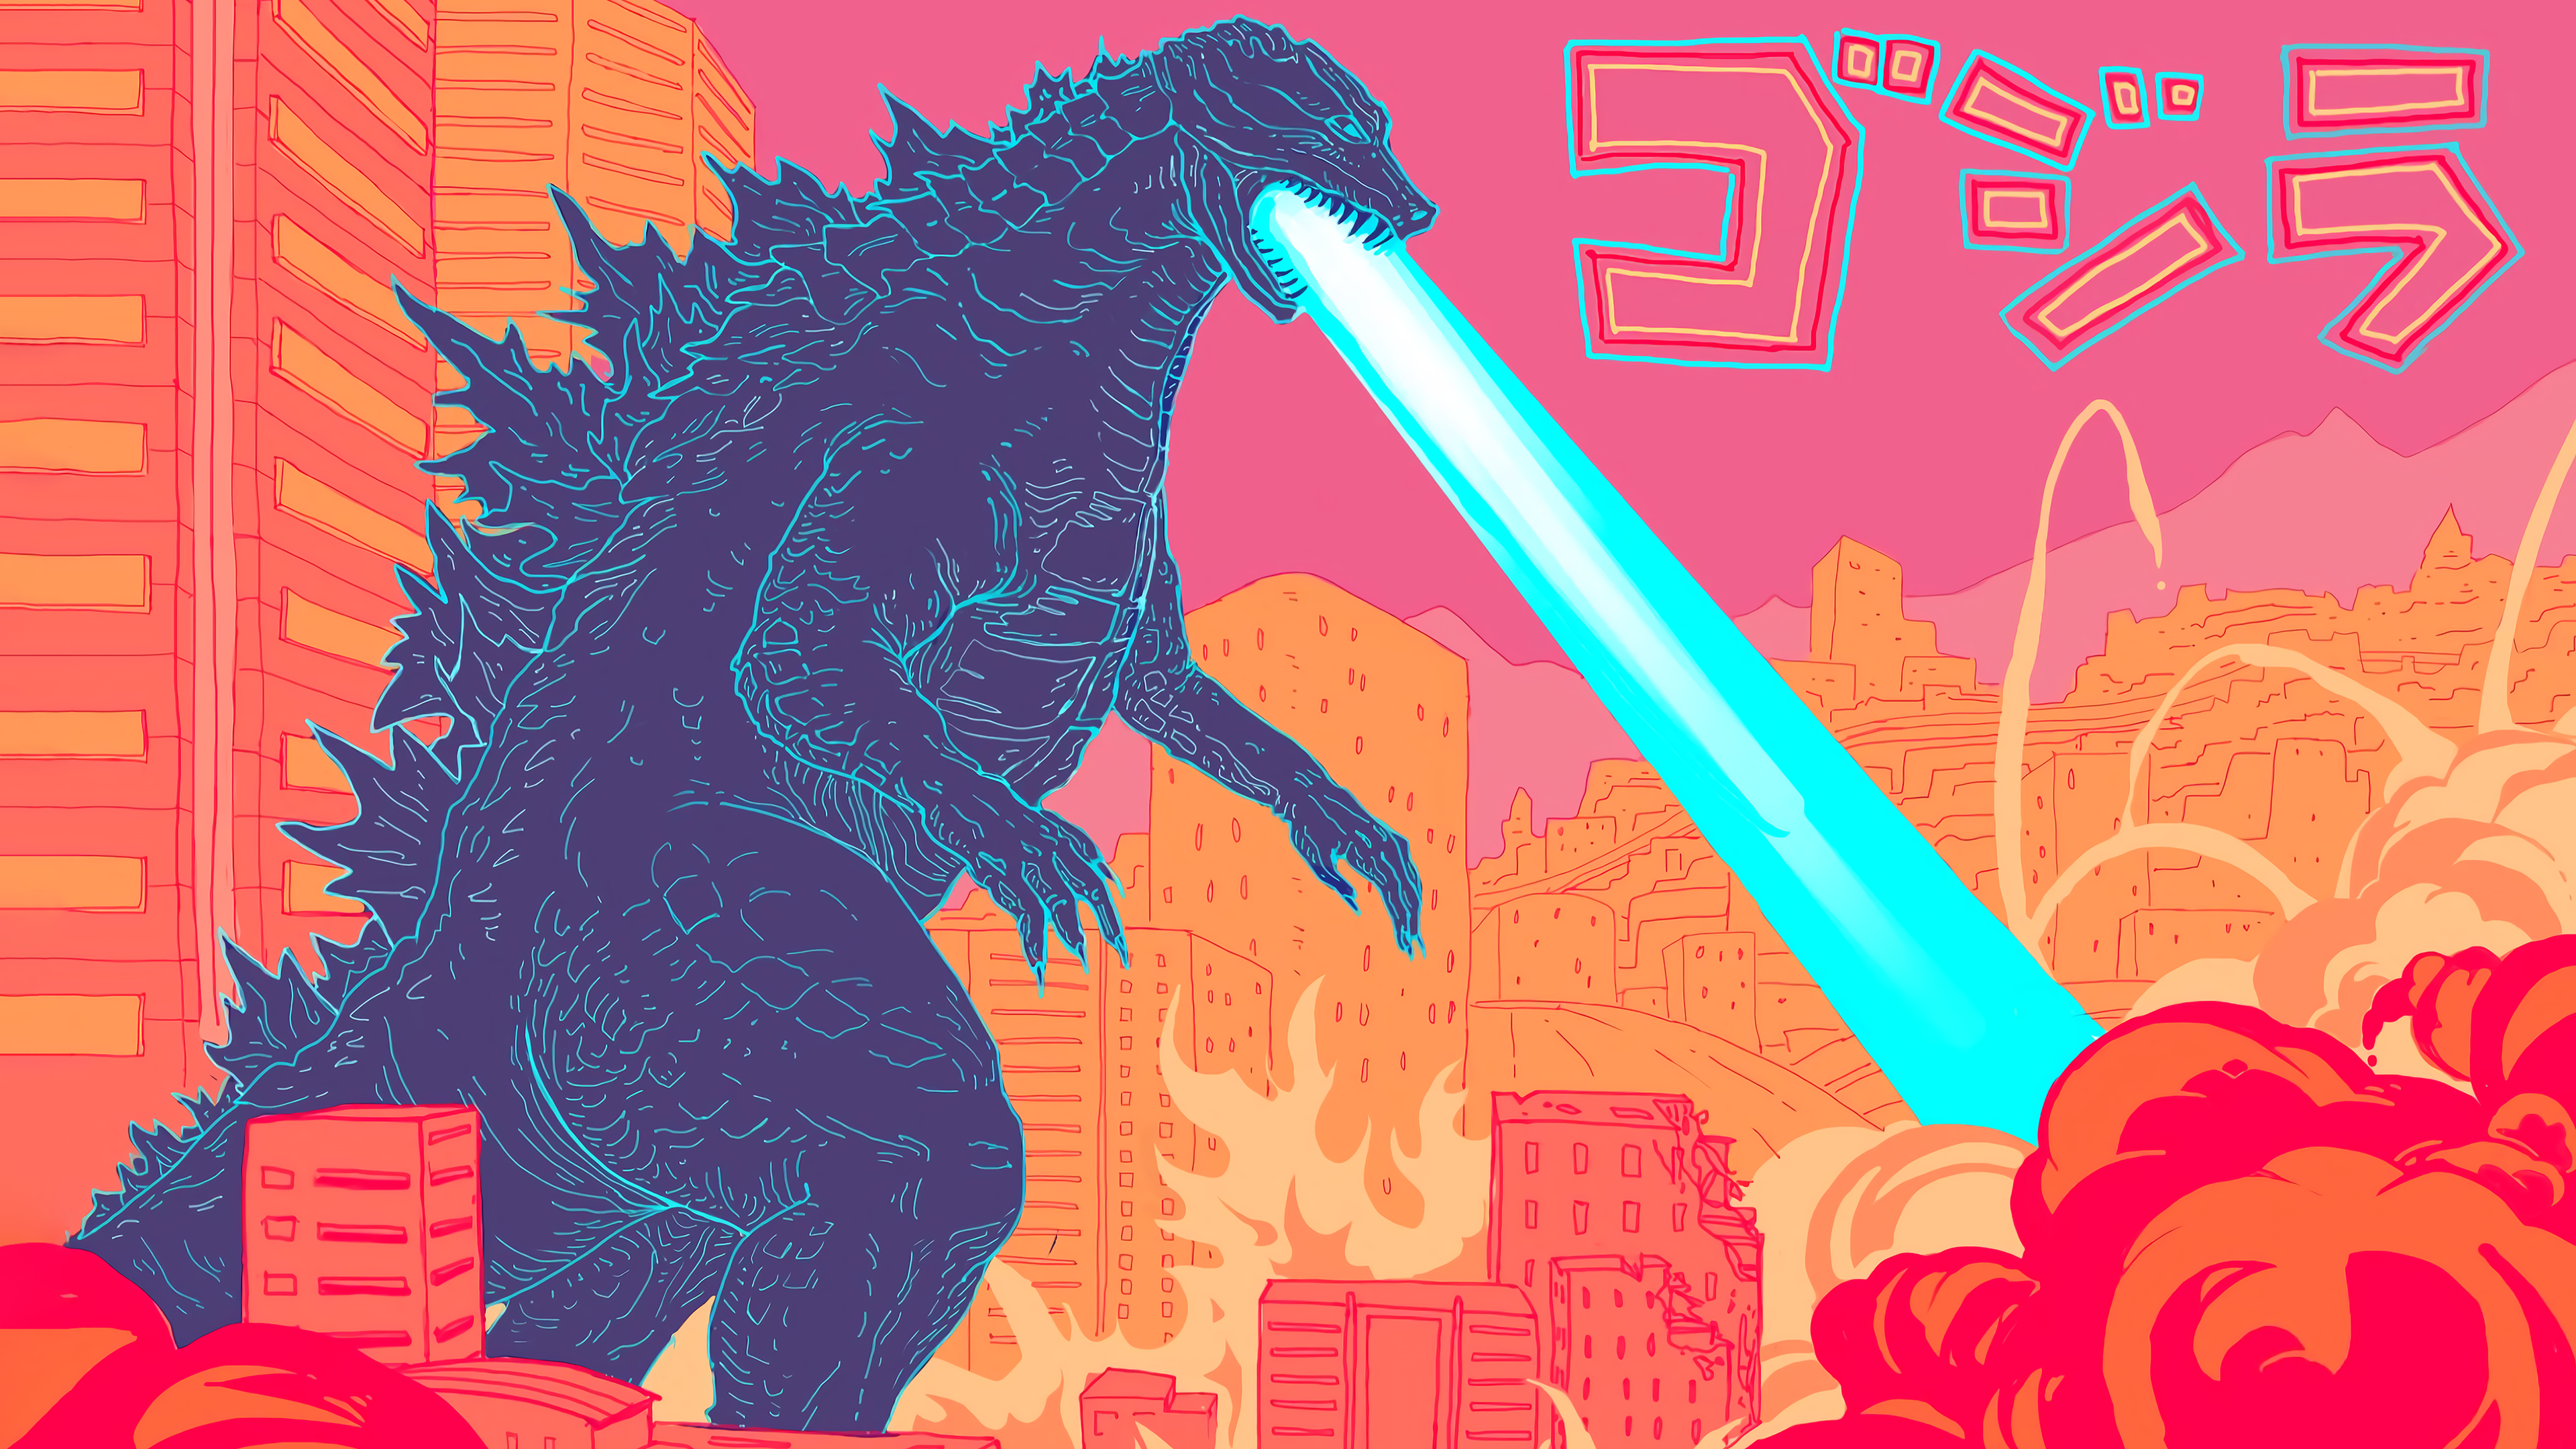 Movie Godzilla HD Wallpaper | Background Image